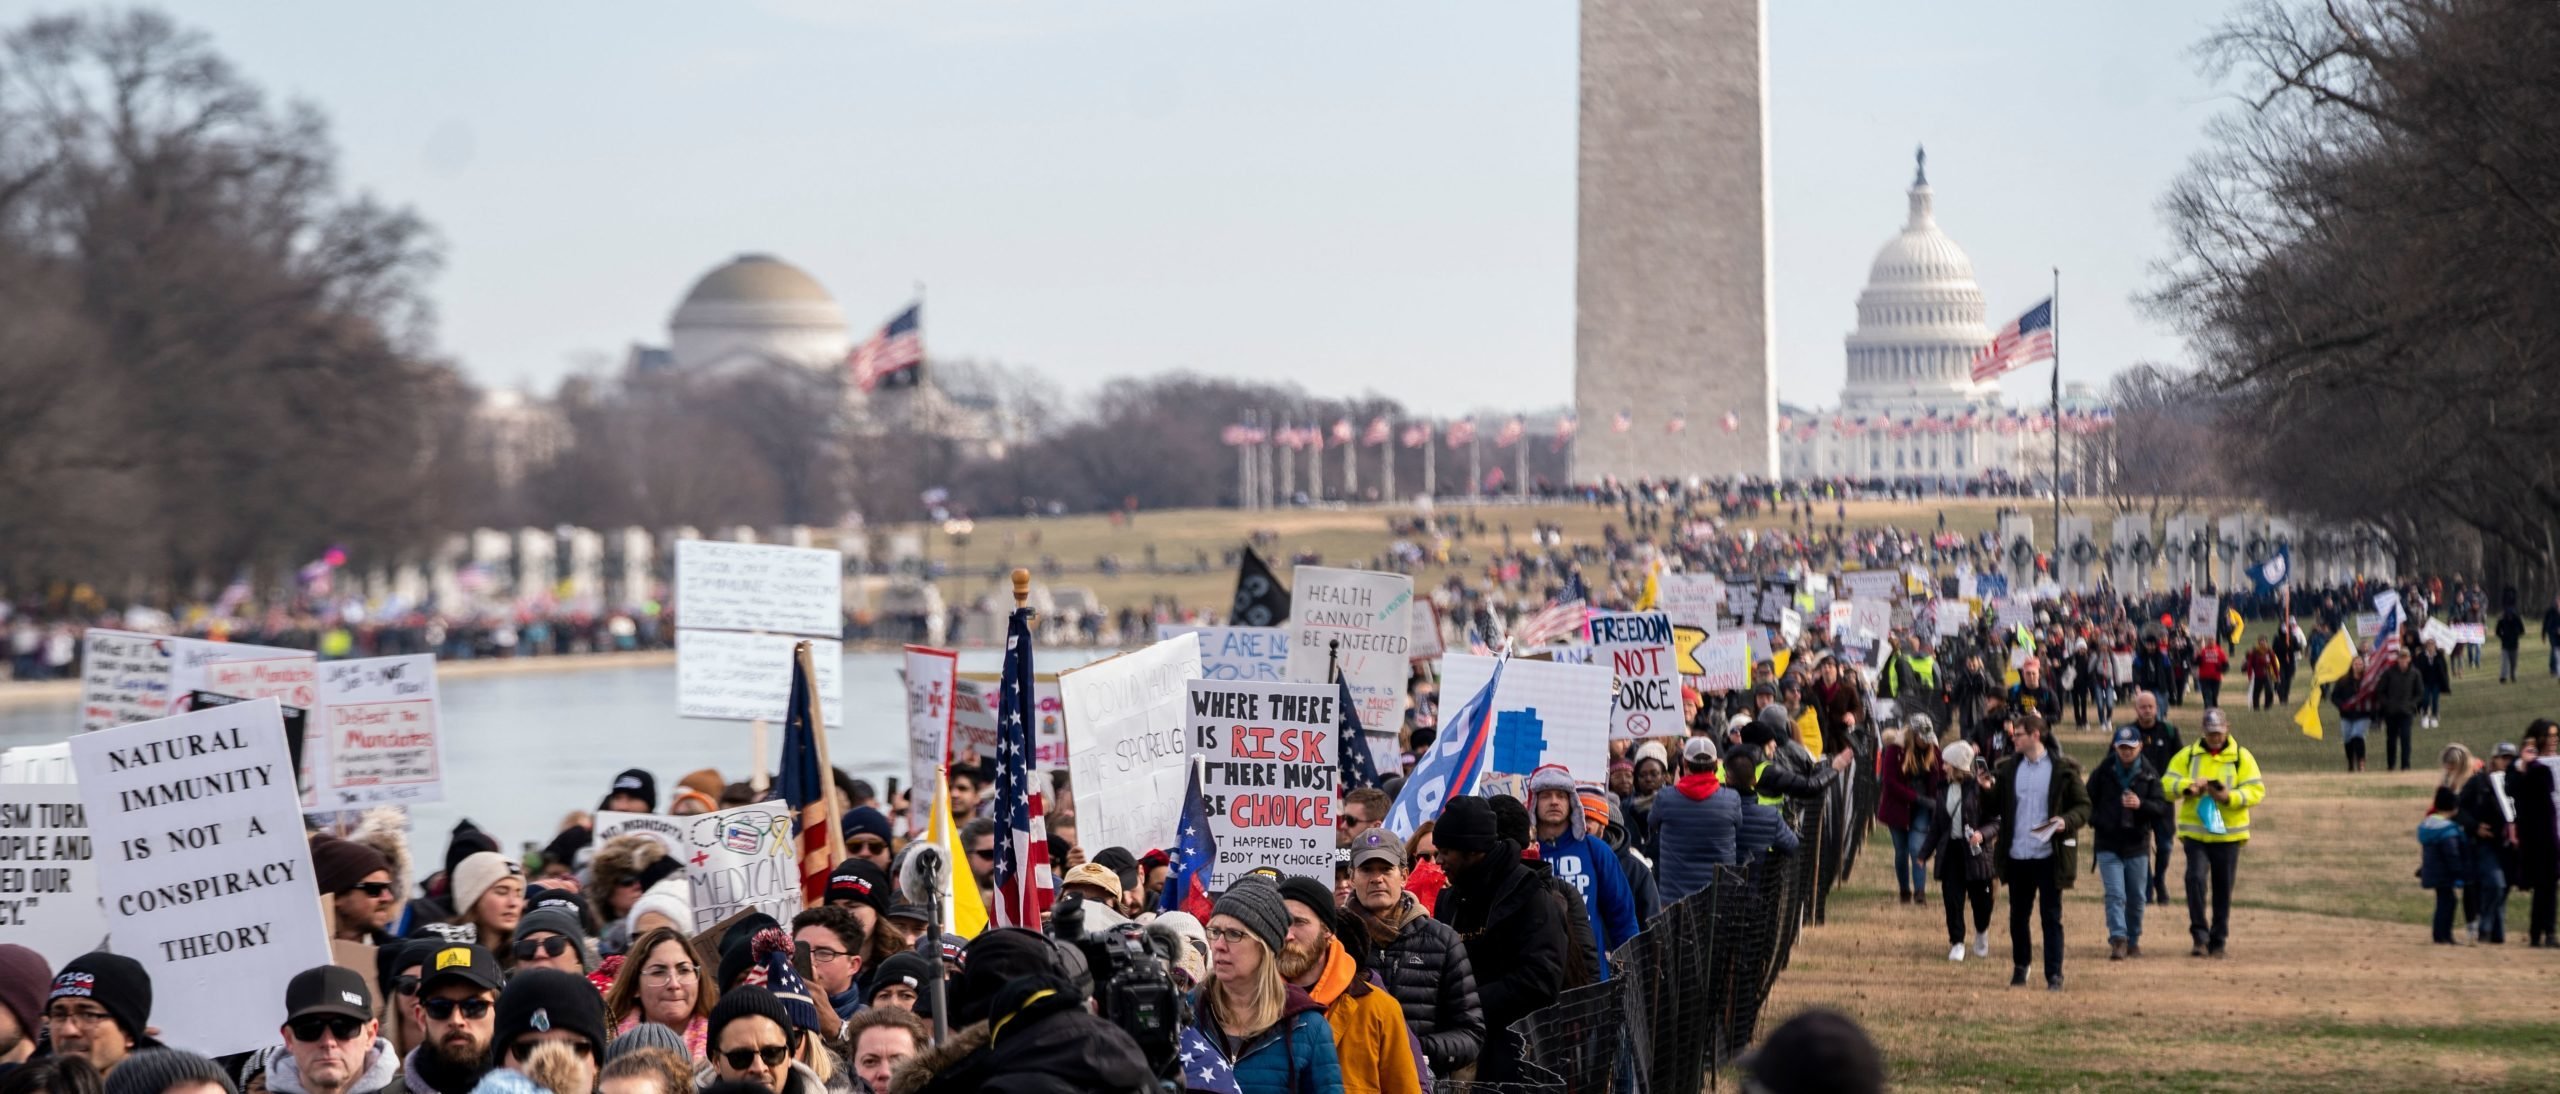 Más de 30,000 personas marcharon para ‘derrotar los mandatos’ en Washington DC